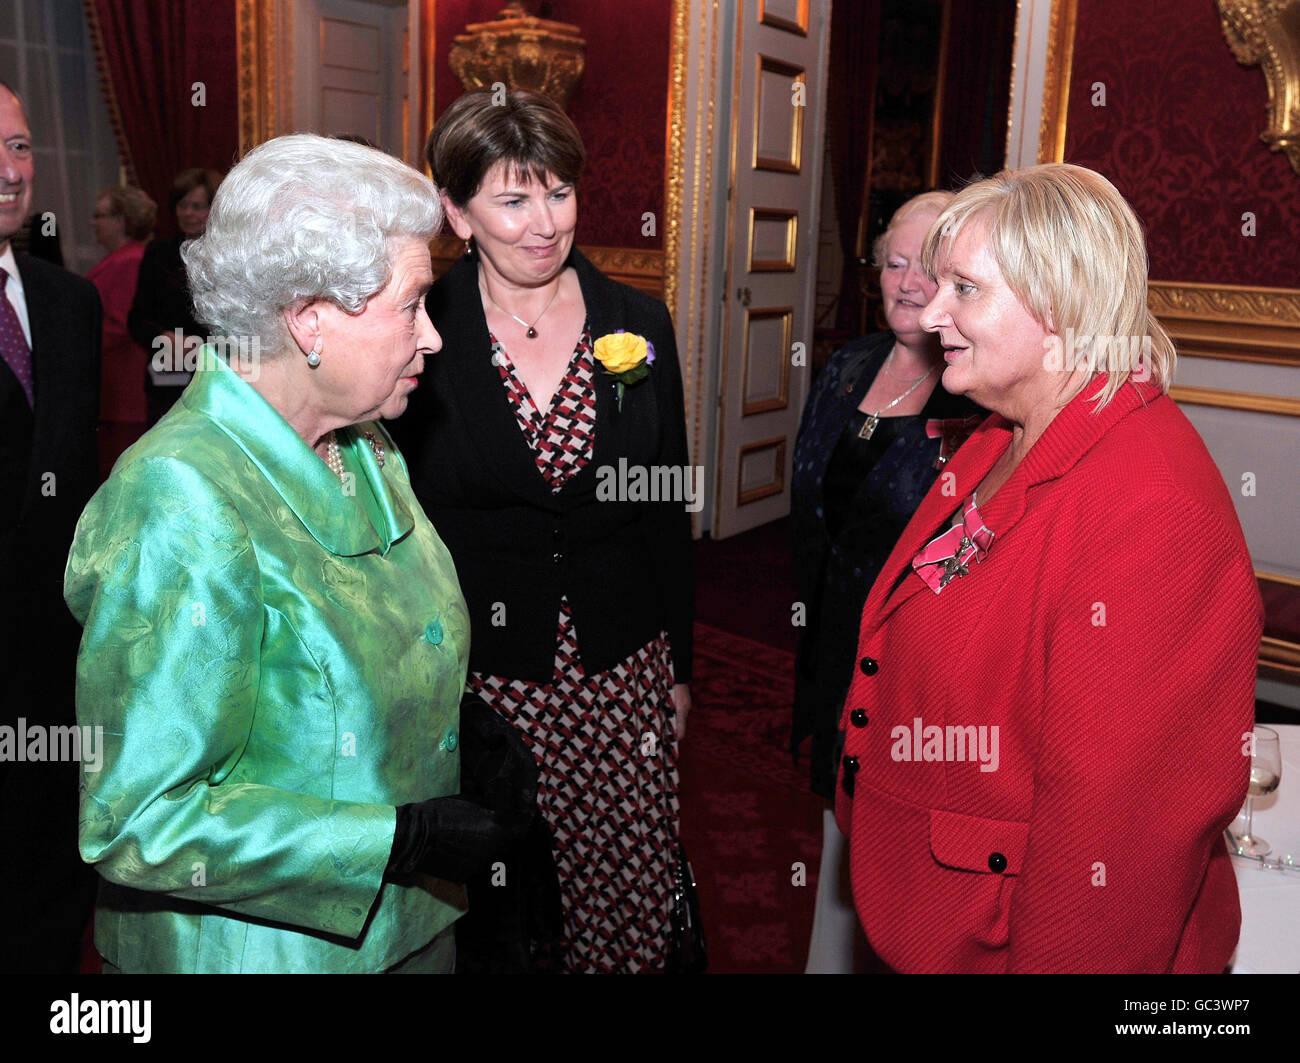 La regina Elisabetta II parla con Mary o'Neil MBE, di Dungannon, nell'Irlanda del Nord, durante un ricevimento in occasione del 50° anniversario della Cruse di beneficenza per il lutto nazionale, a St James's Palace, questa sera. Foto Stock